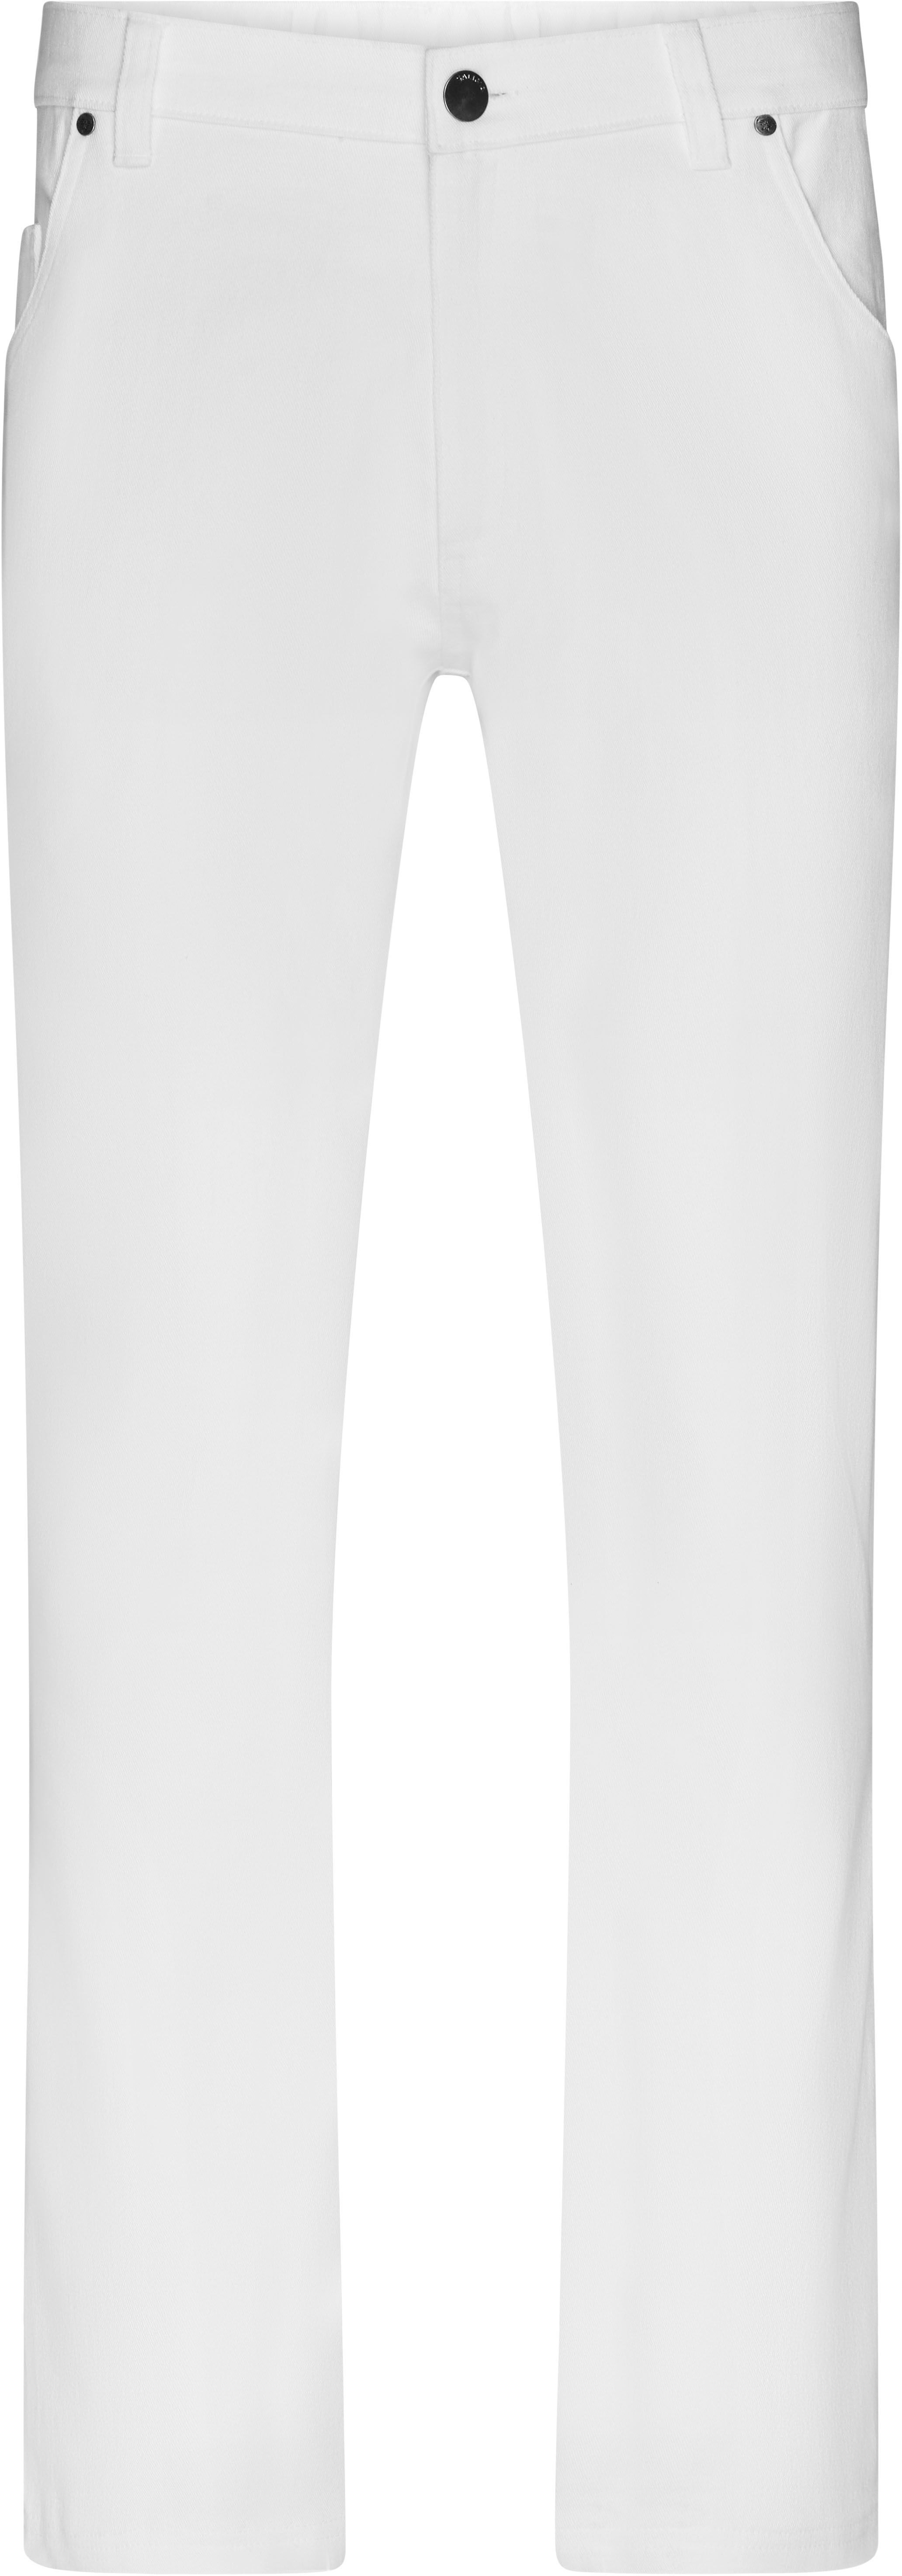 Pánské elastické kalhoty JN 3002 Barva: bílá, Velikost: 44